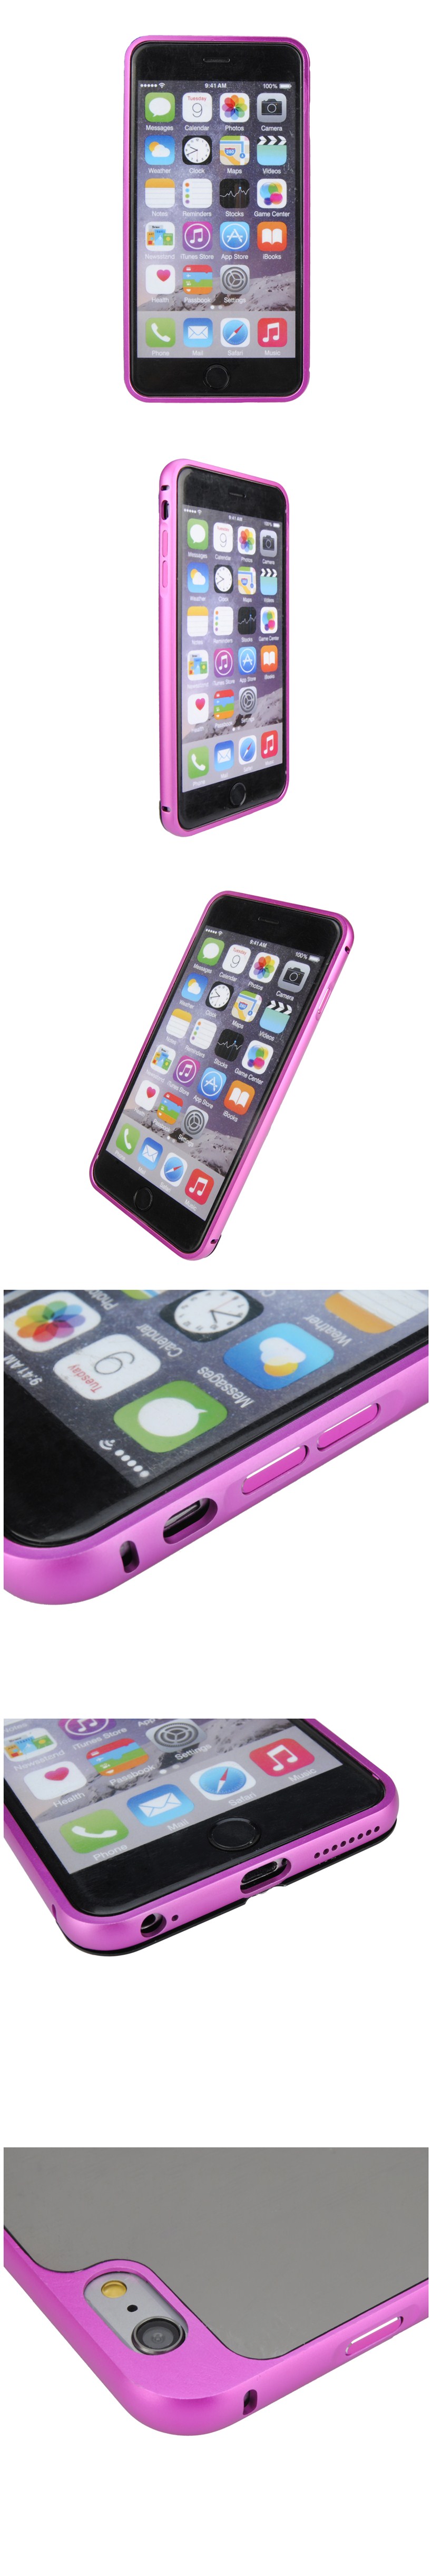 Luxury-Ultra-Thin-Aluminum-Mirror-Case-Cover-For-Apple-iPhone-6-Plus-6S-Plus-55-995058